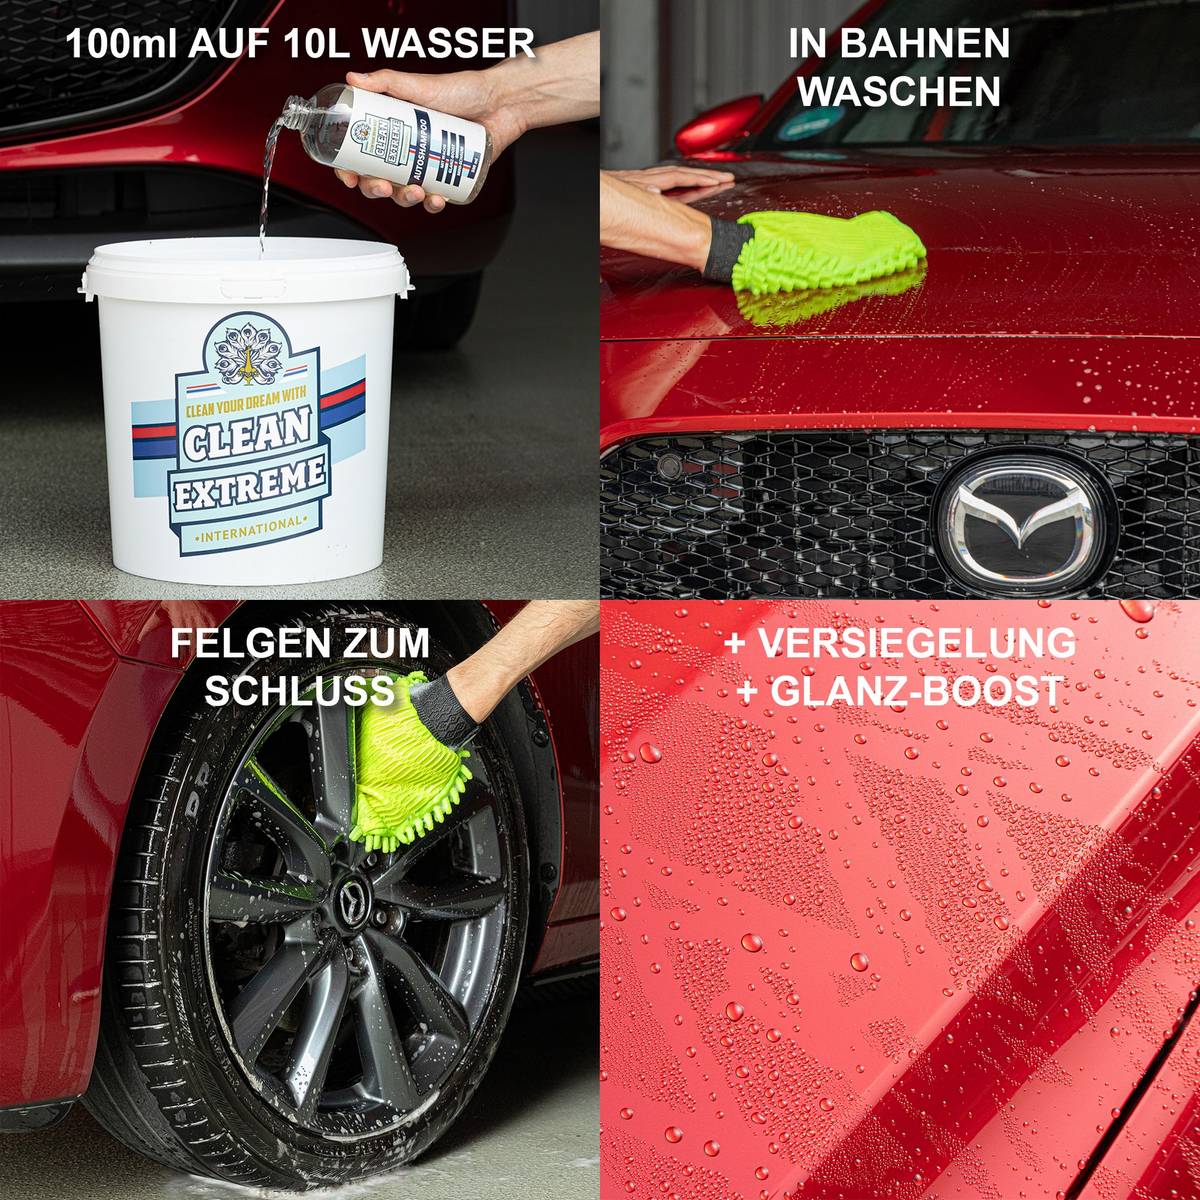 Autoshampoo Konzentrat mit Wachs 2,3 Liter - CLEANEXTREME